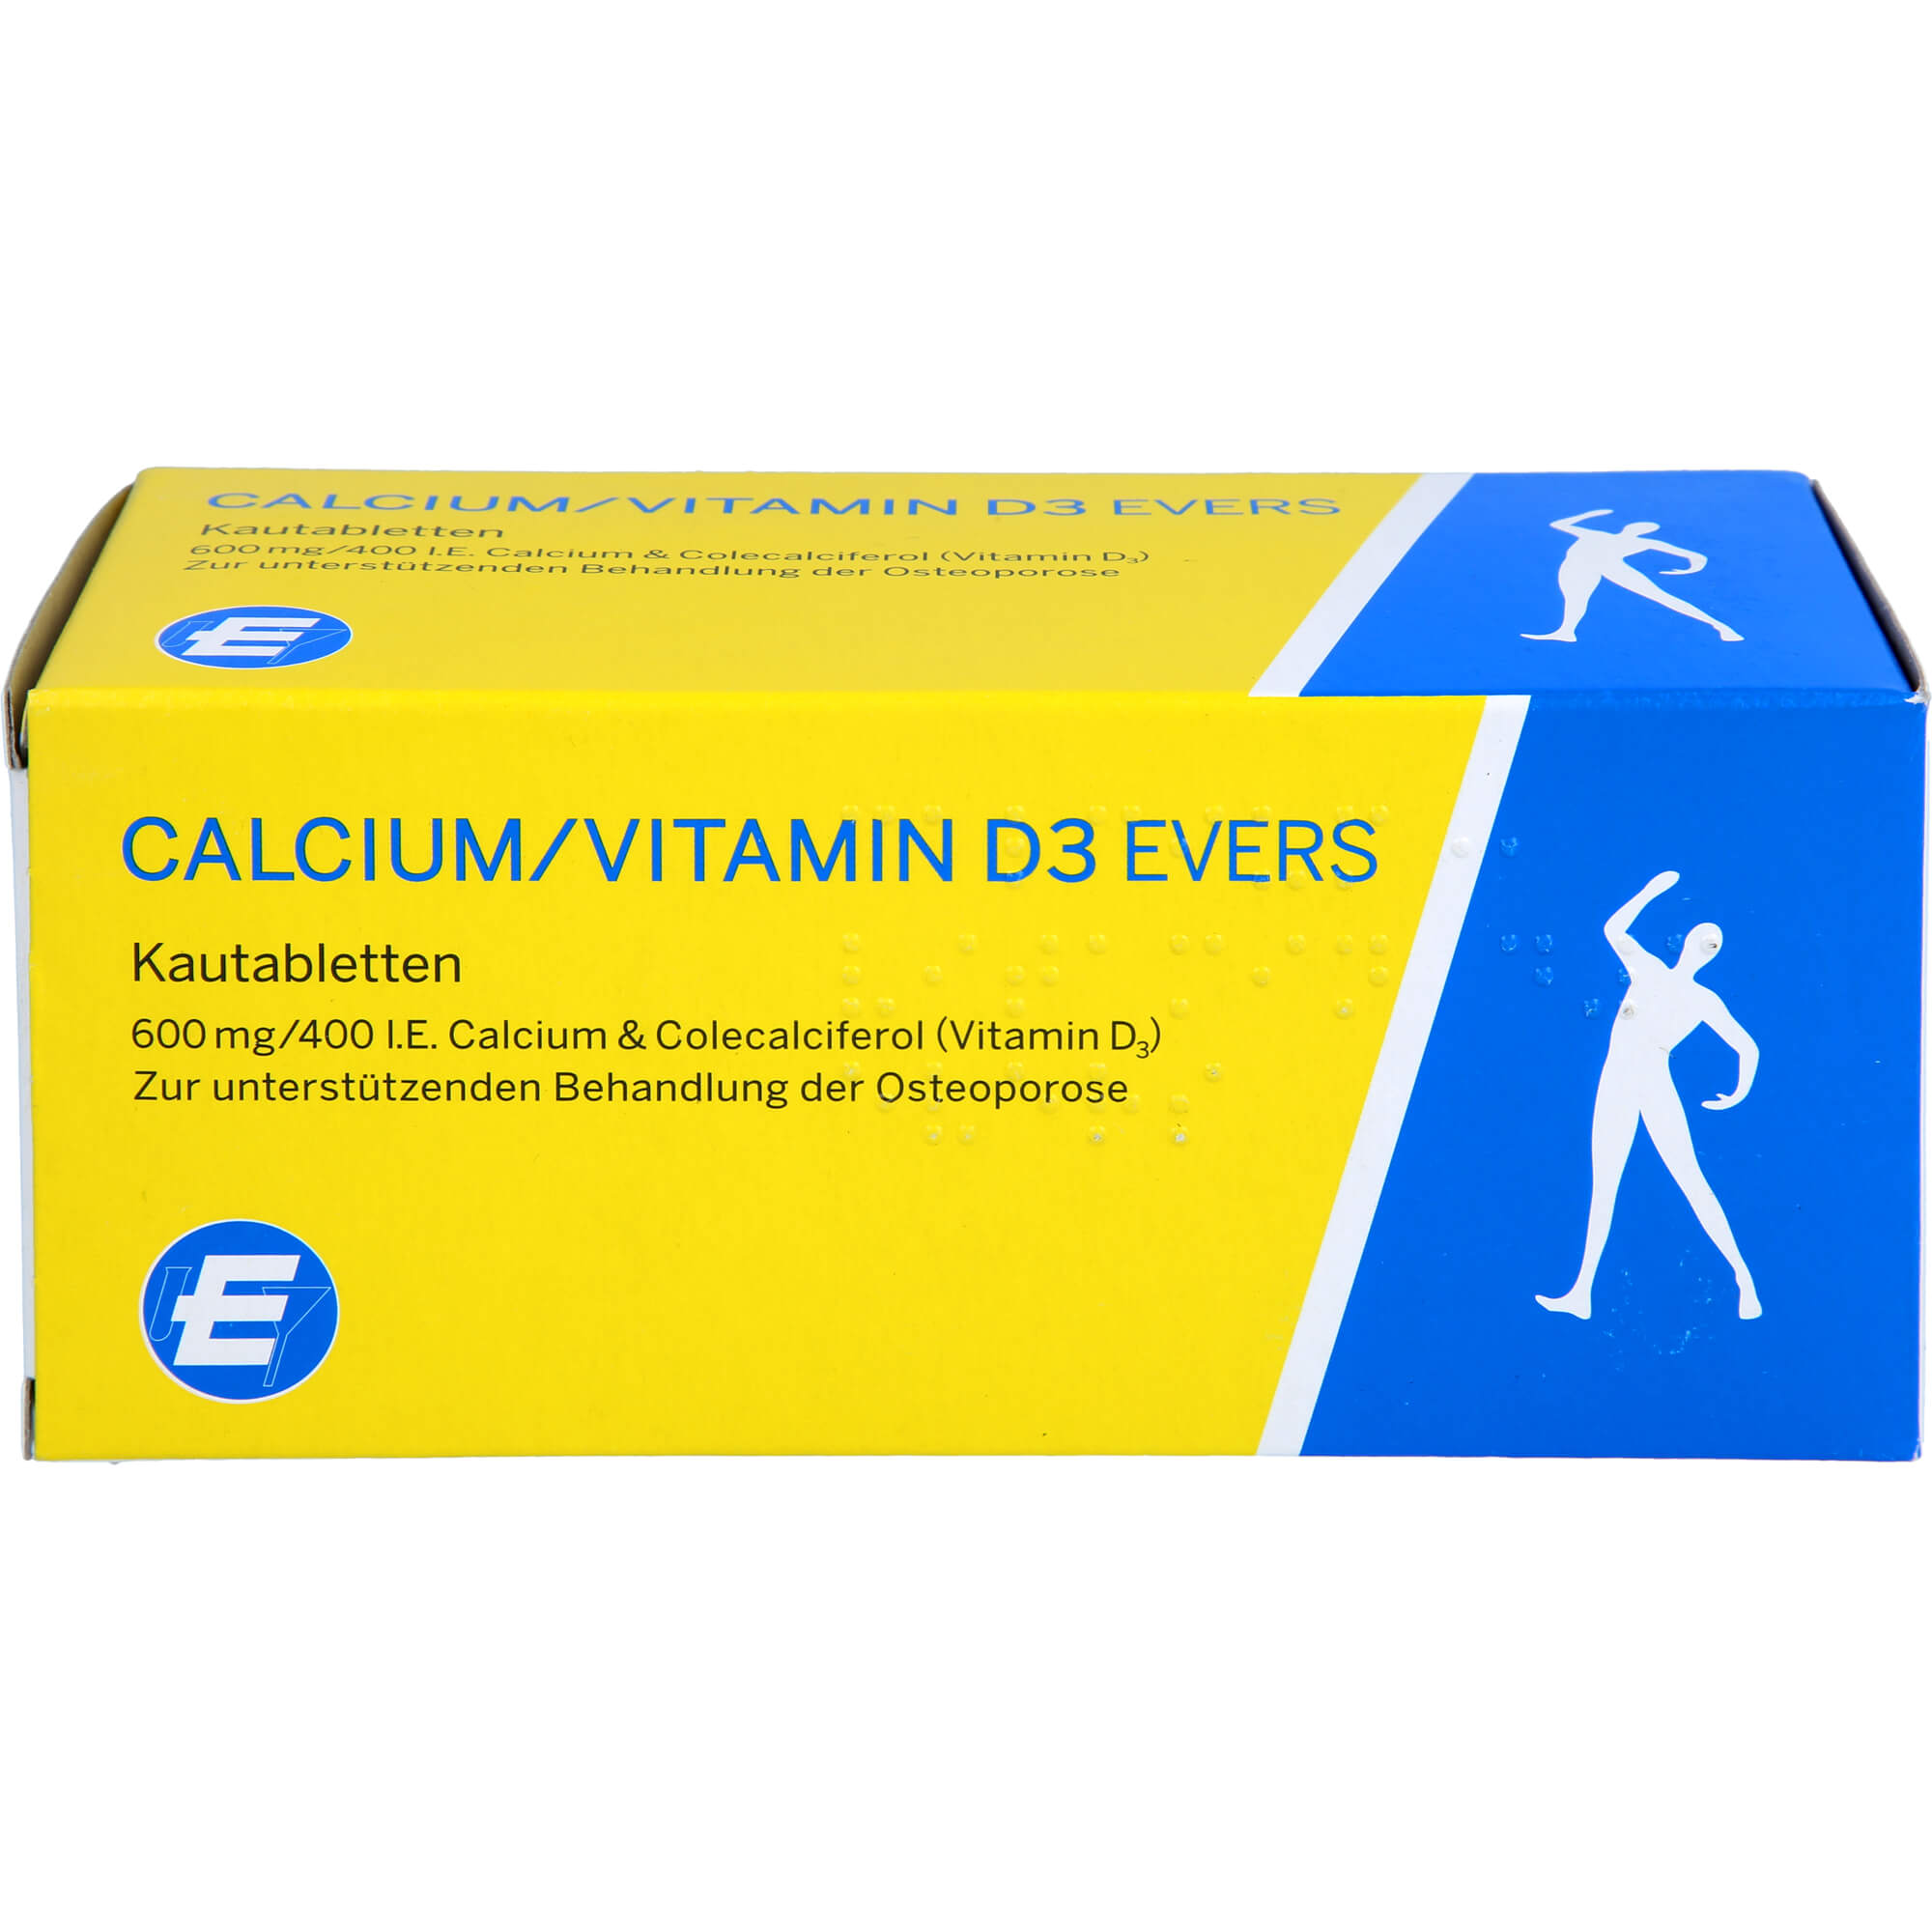 CALCIUM/VITAMIN D3 Evers 600 mg/400 I.E Kautabl.